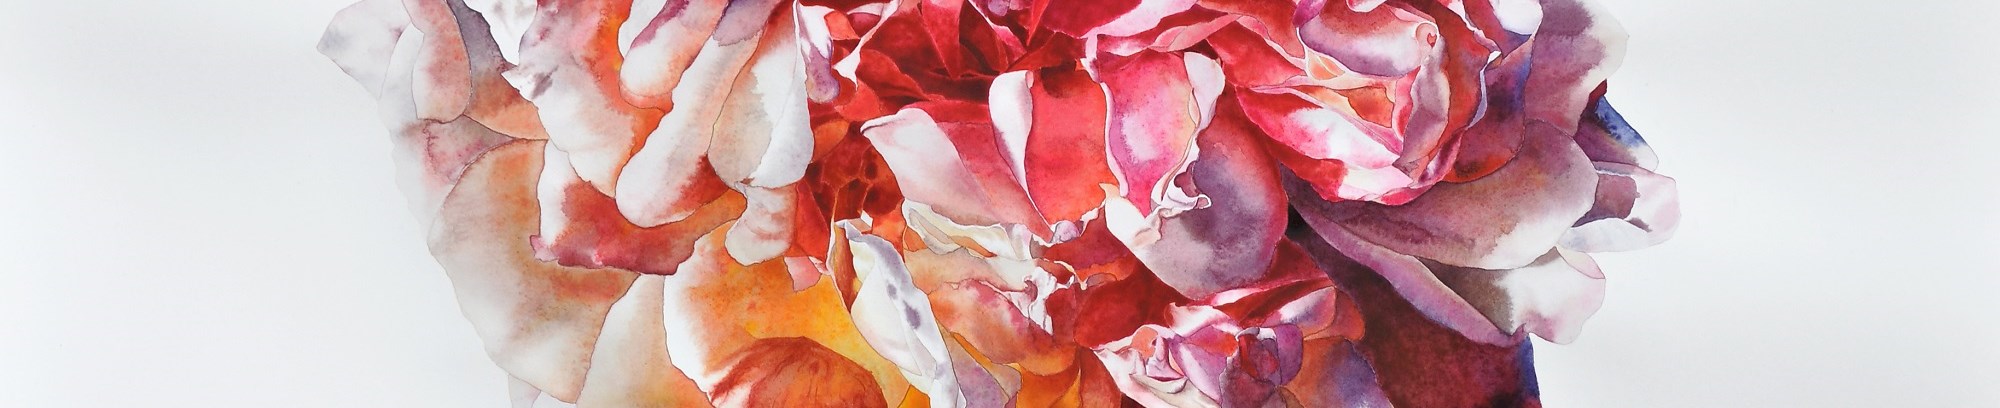 vild rose - figurativ akvarel - fra underviser Anne Skole Overgaard